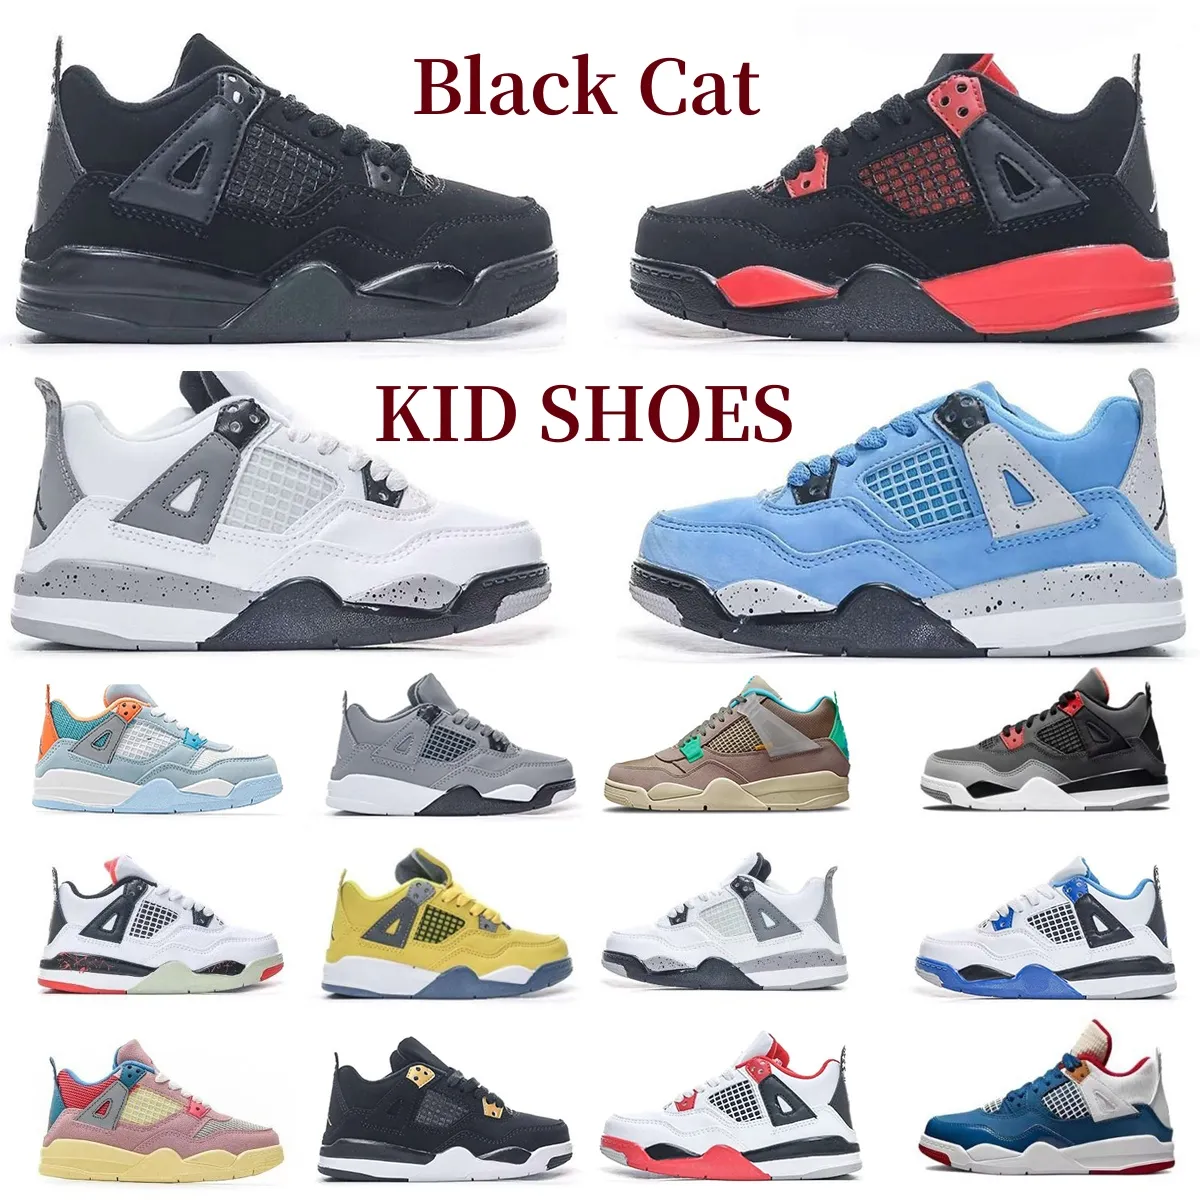 Rozmiar 22-35 Buty dla dzieci Sneakers Boys Wojska czarny kot wyhodowany Czerwony Trenery Bute Red Thunder Dziewczyny Dziewczyny Młodzież maluch niebieski błyskawica fajny szary but dziecięcy